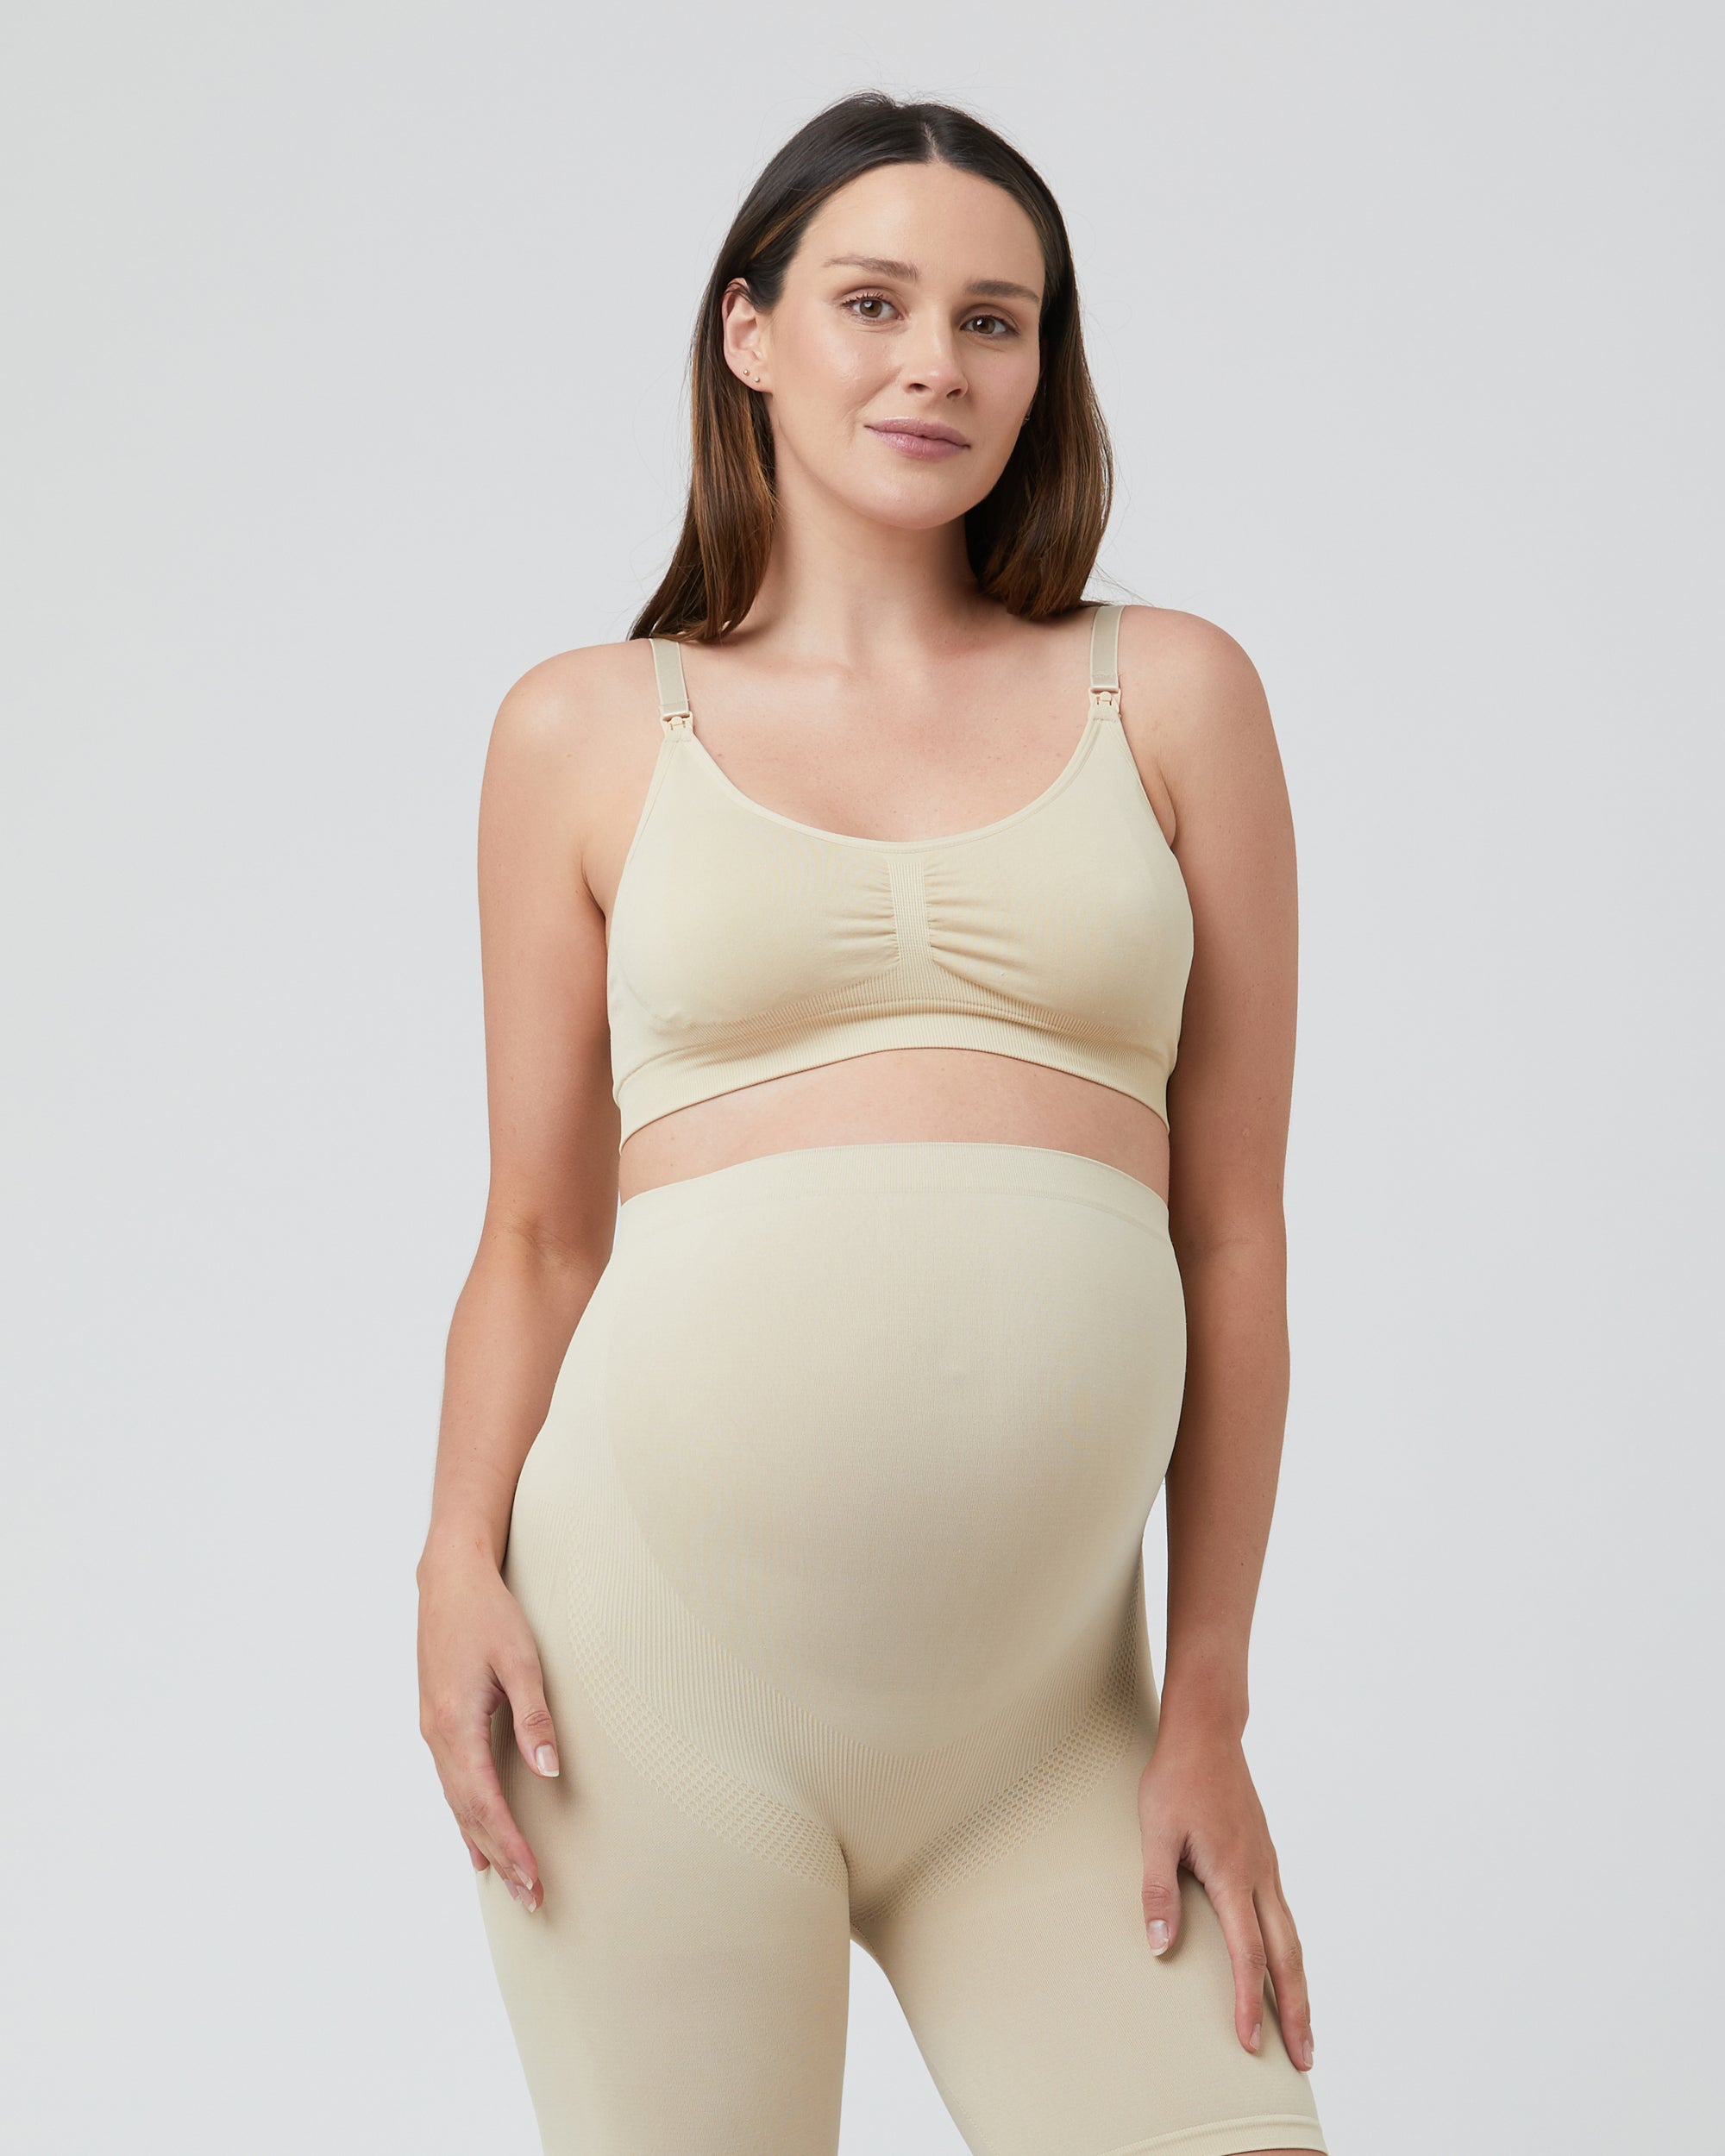 Maternity Underwear - Soft & Seamless Pregnancy Undies & More